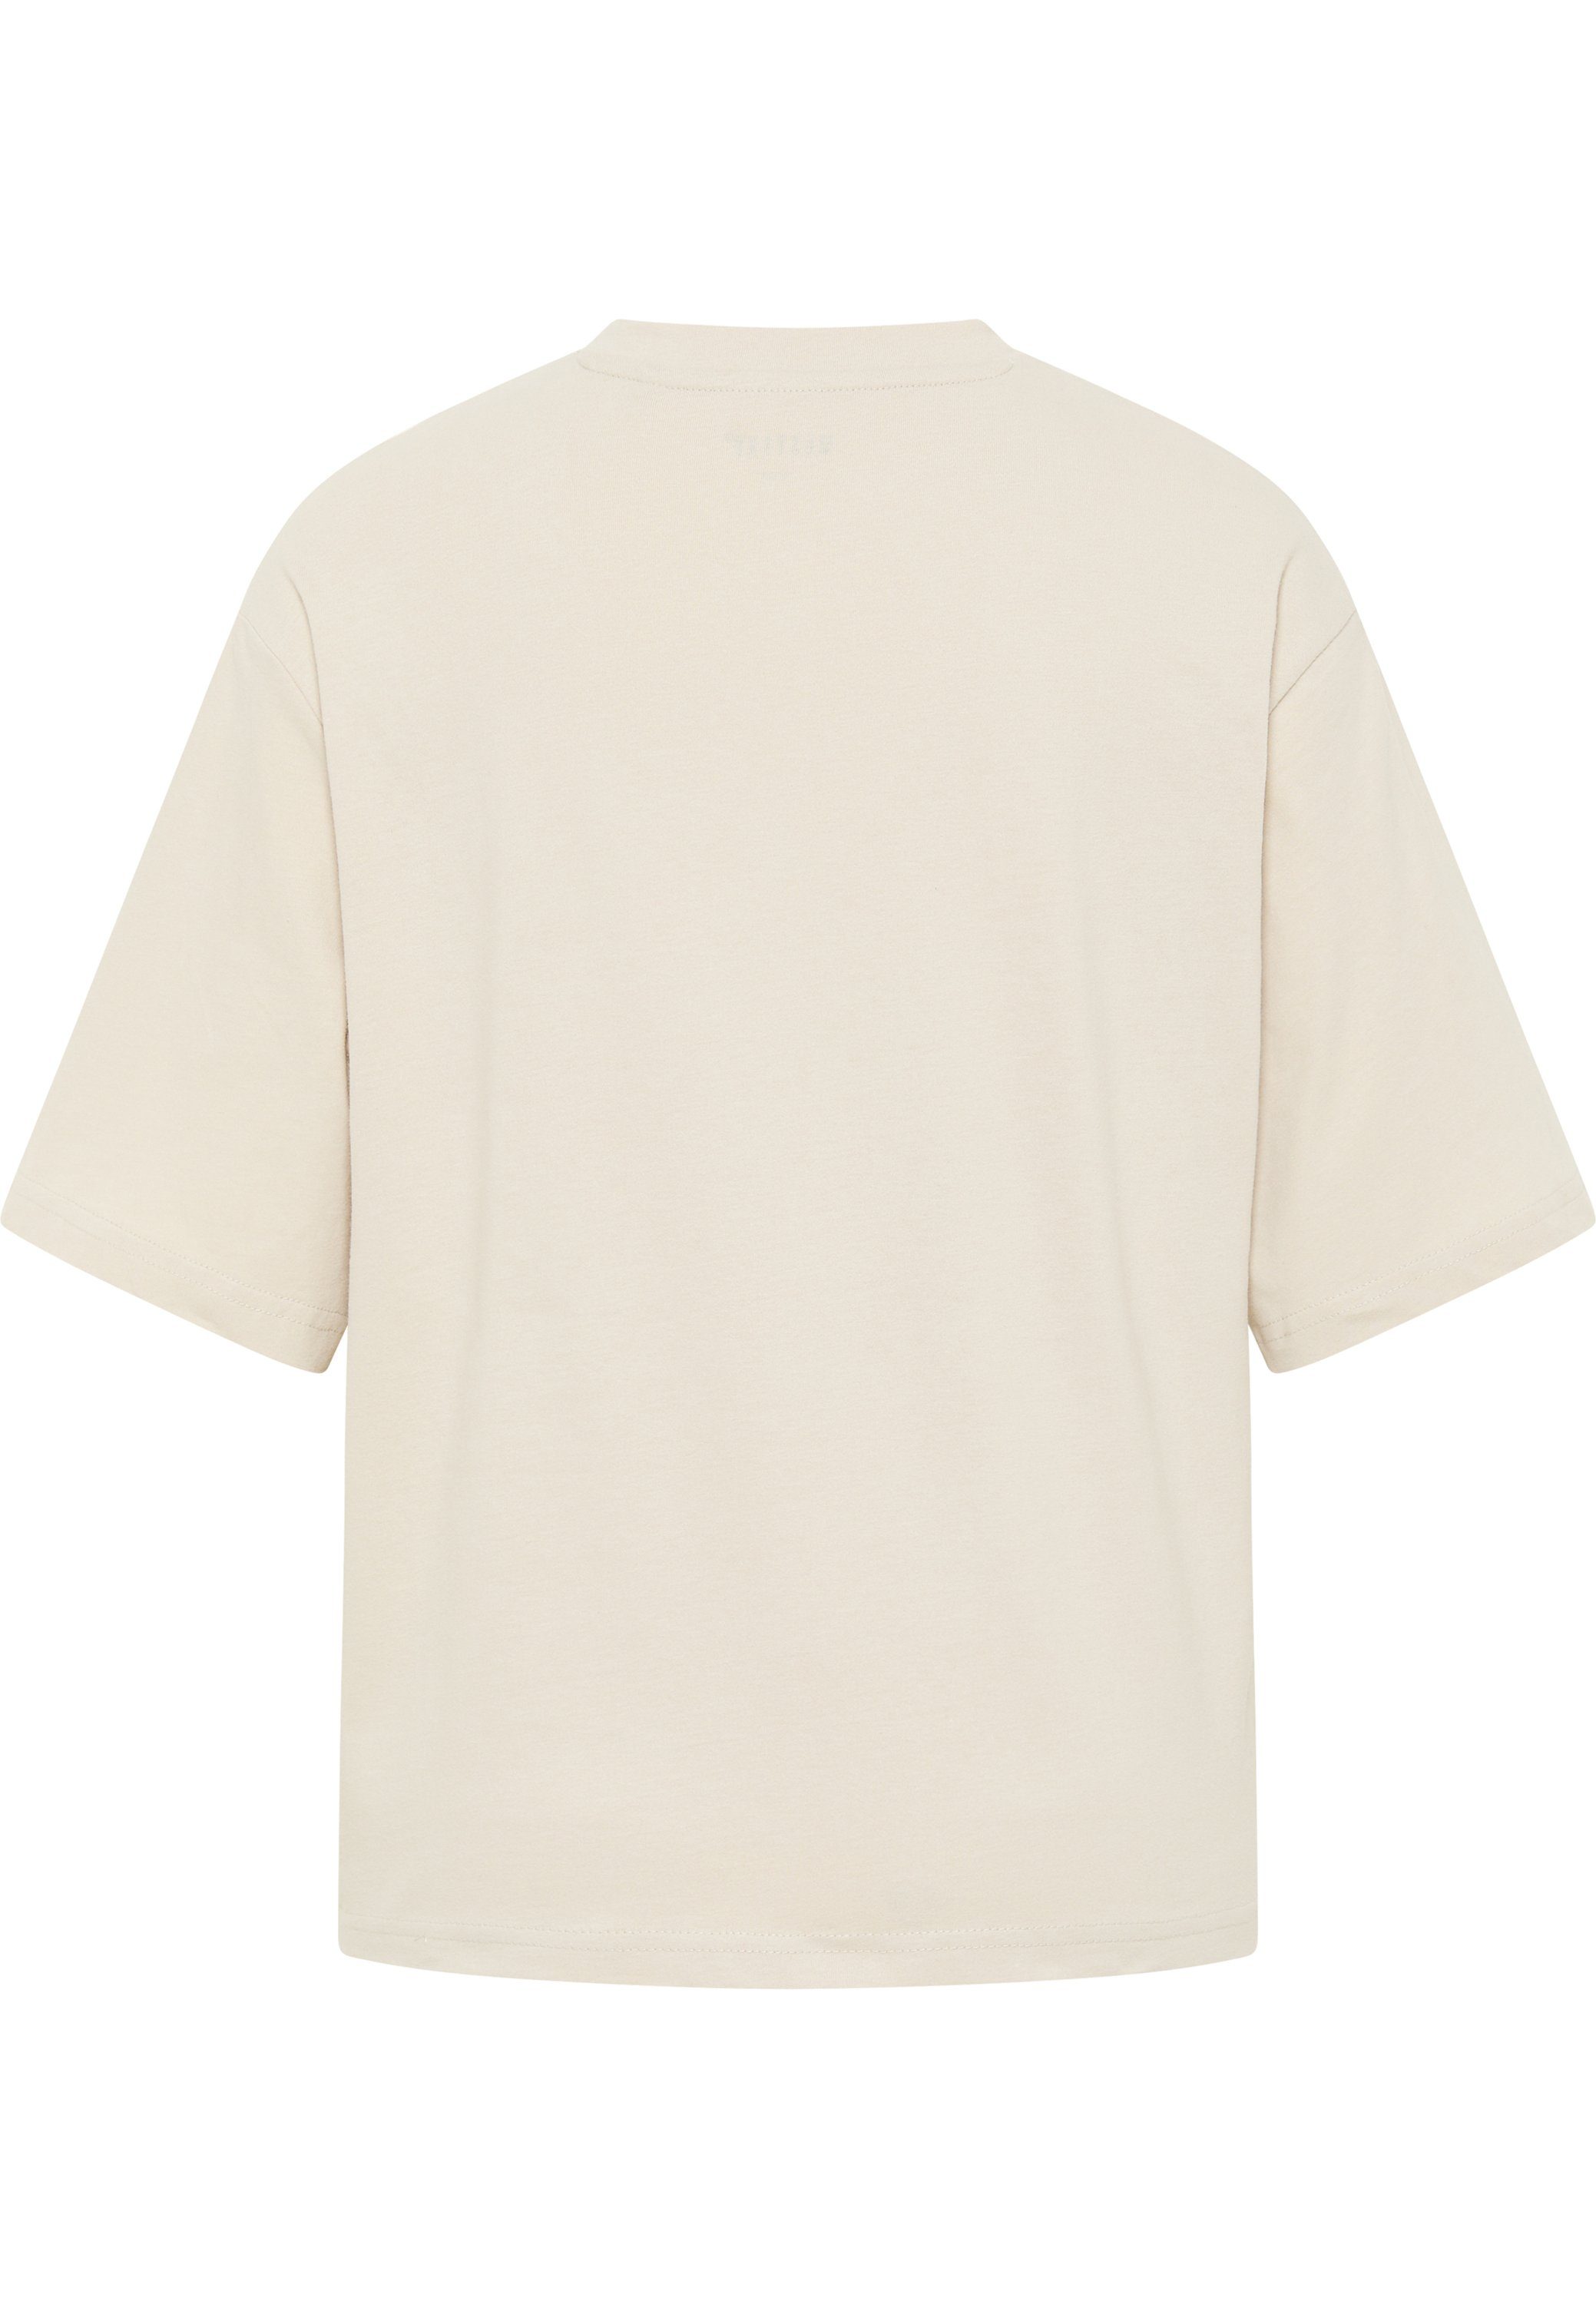 MUSTANG Mustang beige Kurzarmshirt T-Shirt T-Shirt